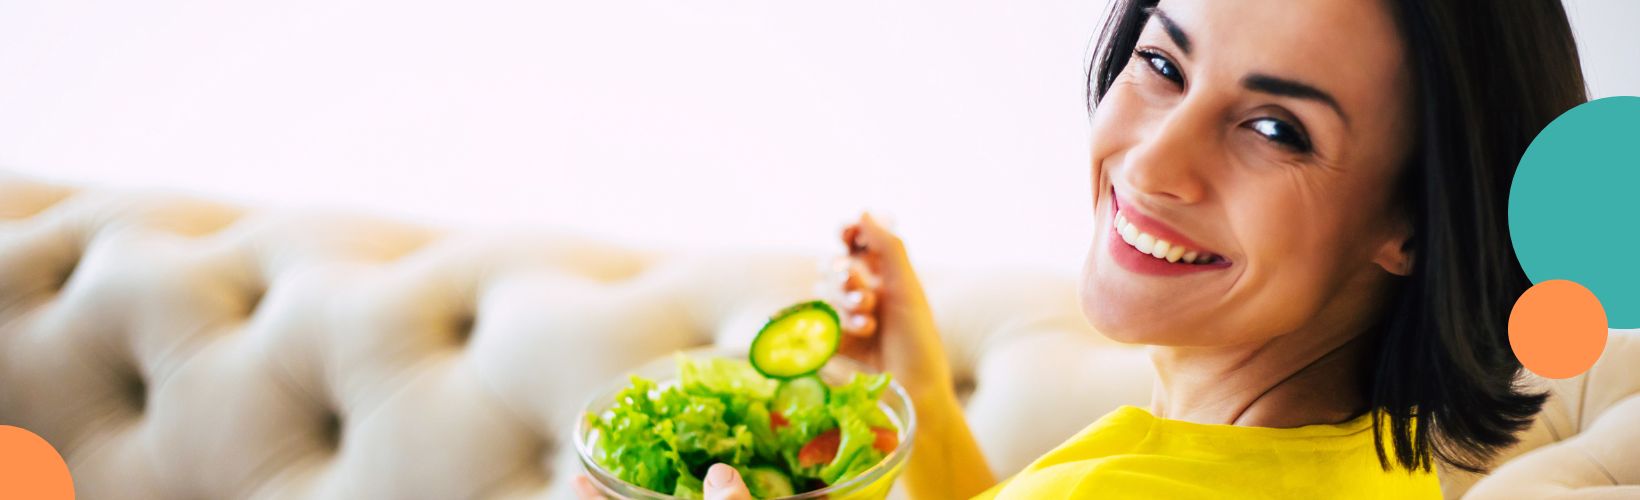 Zdrowa dieta - FAKTY i MITY, zdrowe odżywianie, prawidłowe odżywianie